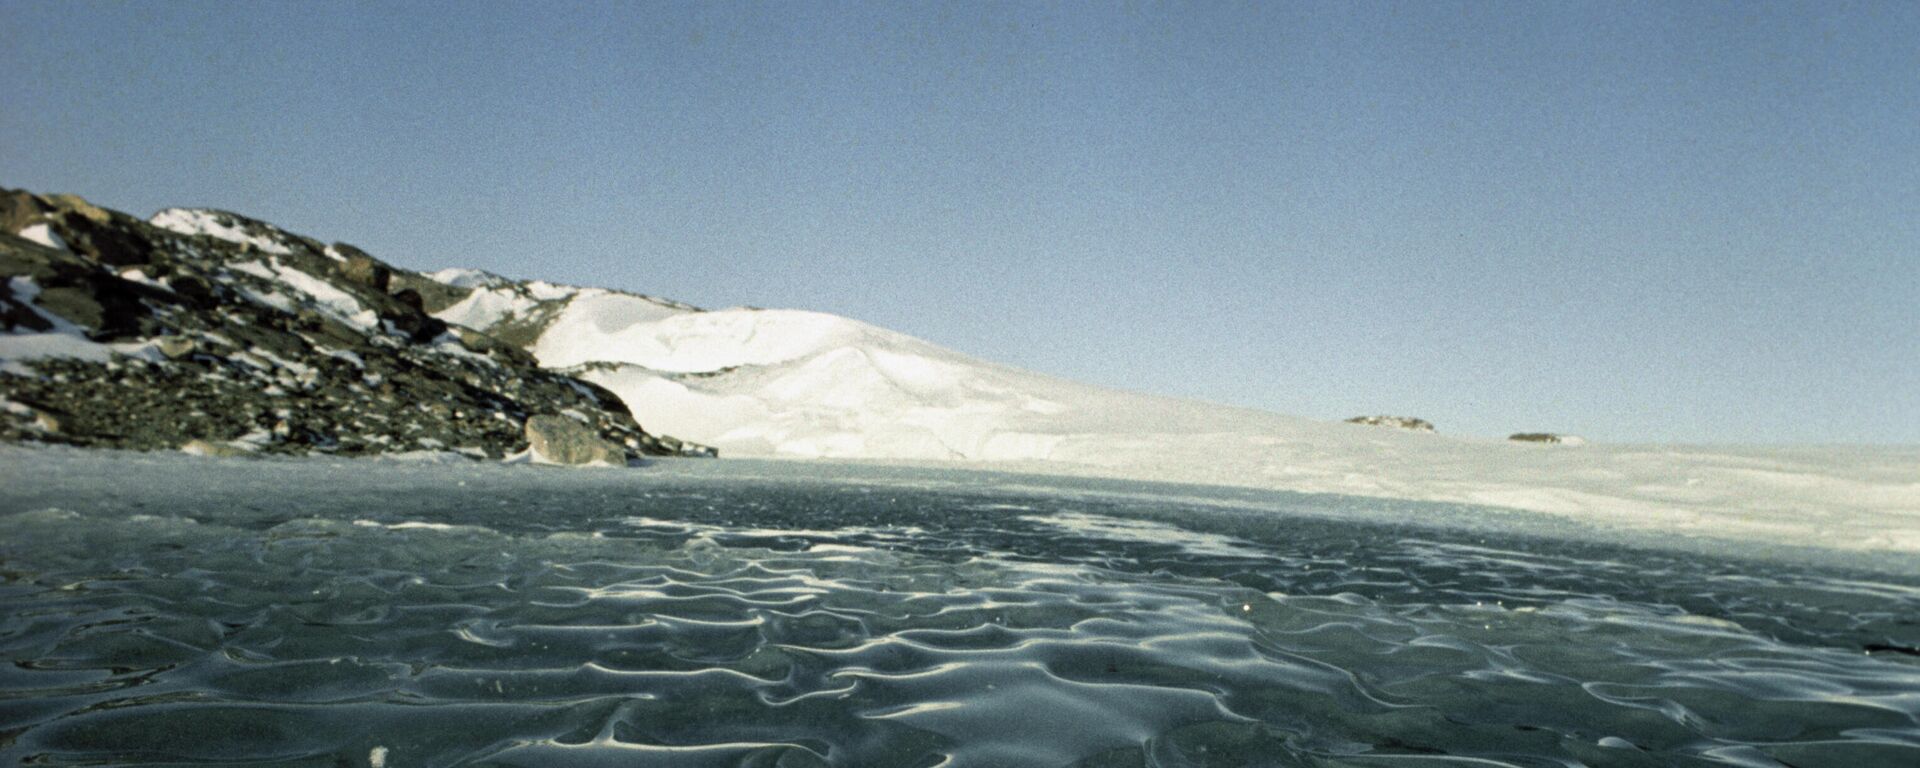 Антарктический ледник. - Sputnik Молдова, 1920, 14.12.2021